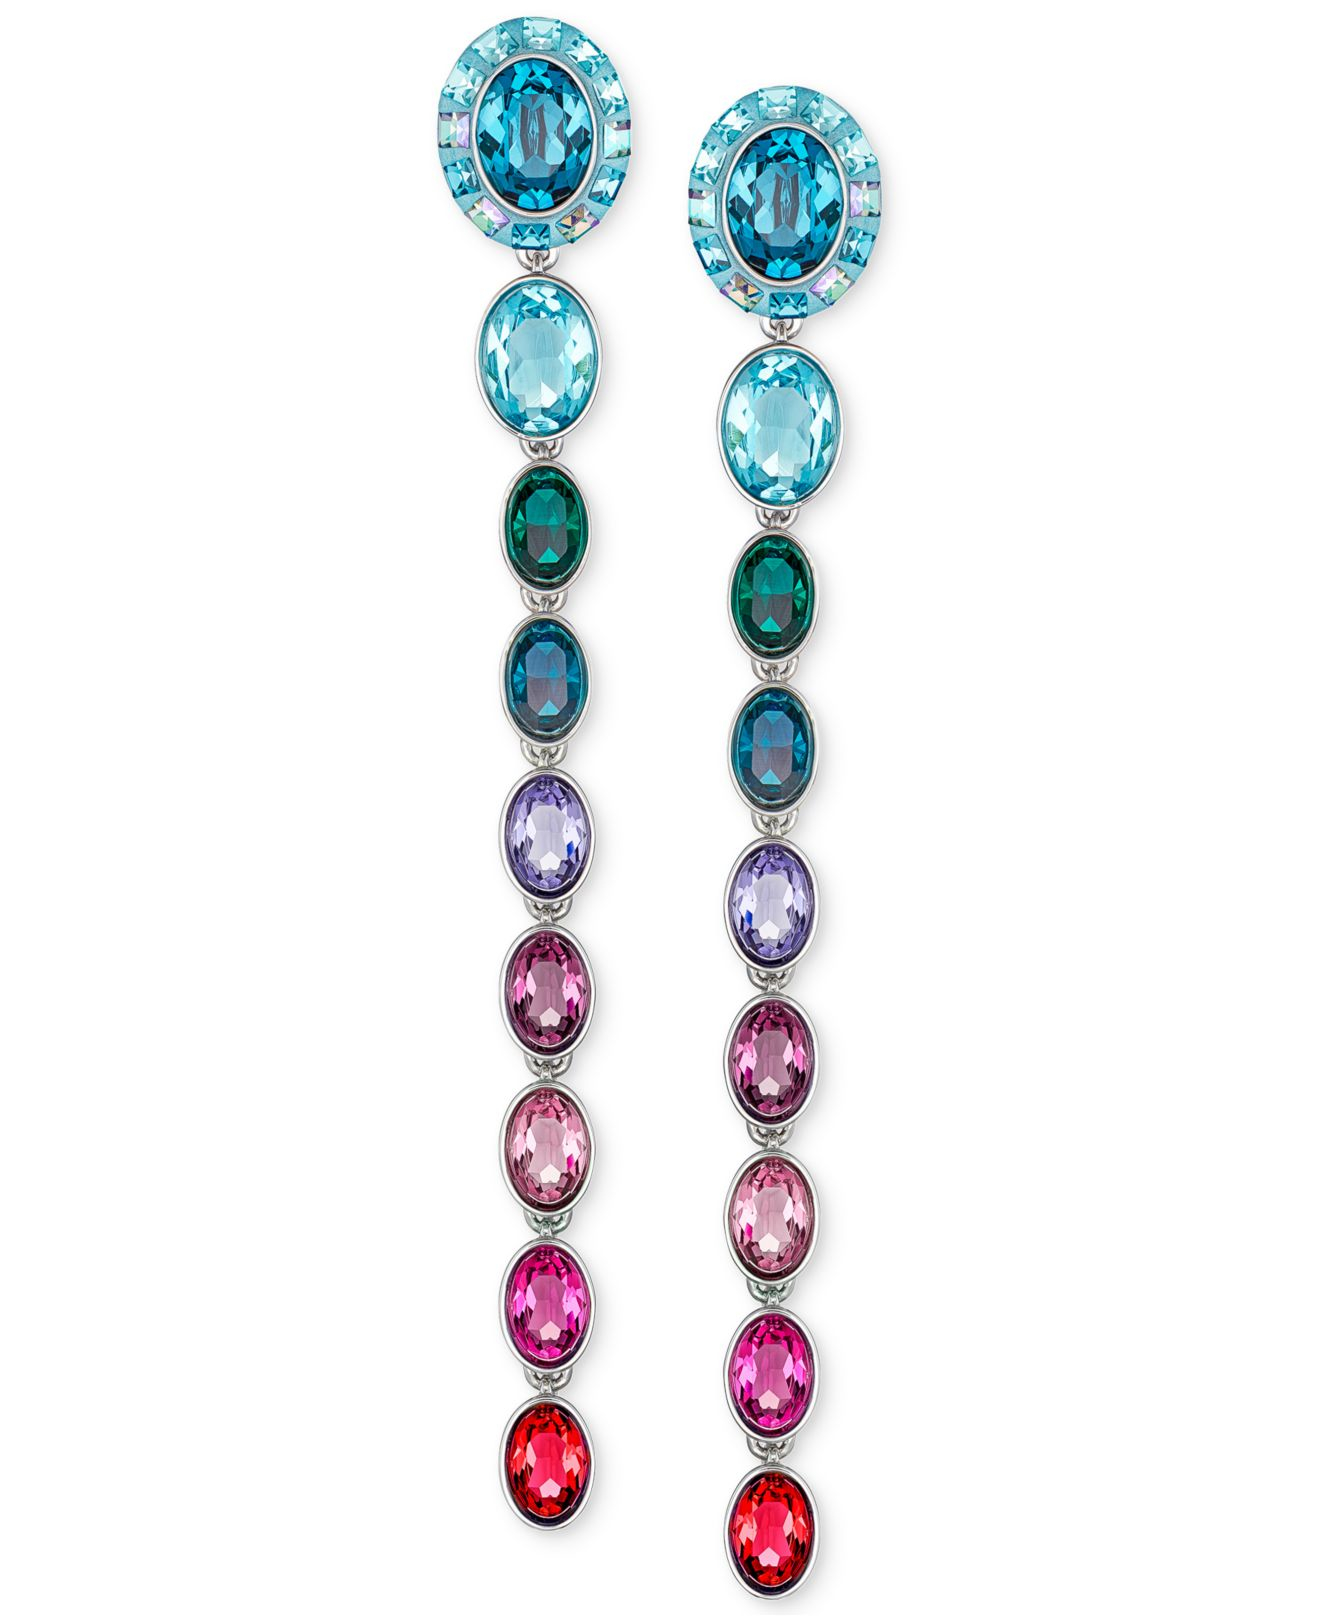 Swarovski Silver-tone Multi-color Crystal Linear Drop Earrings in 